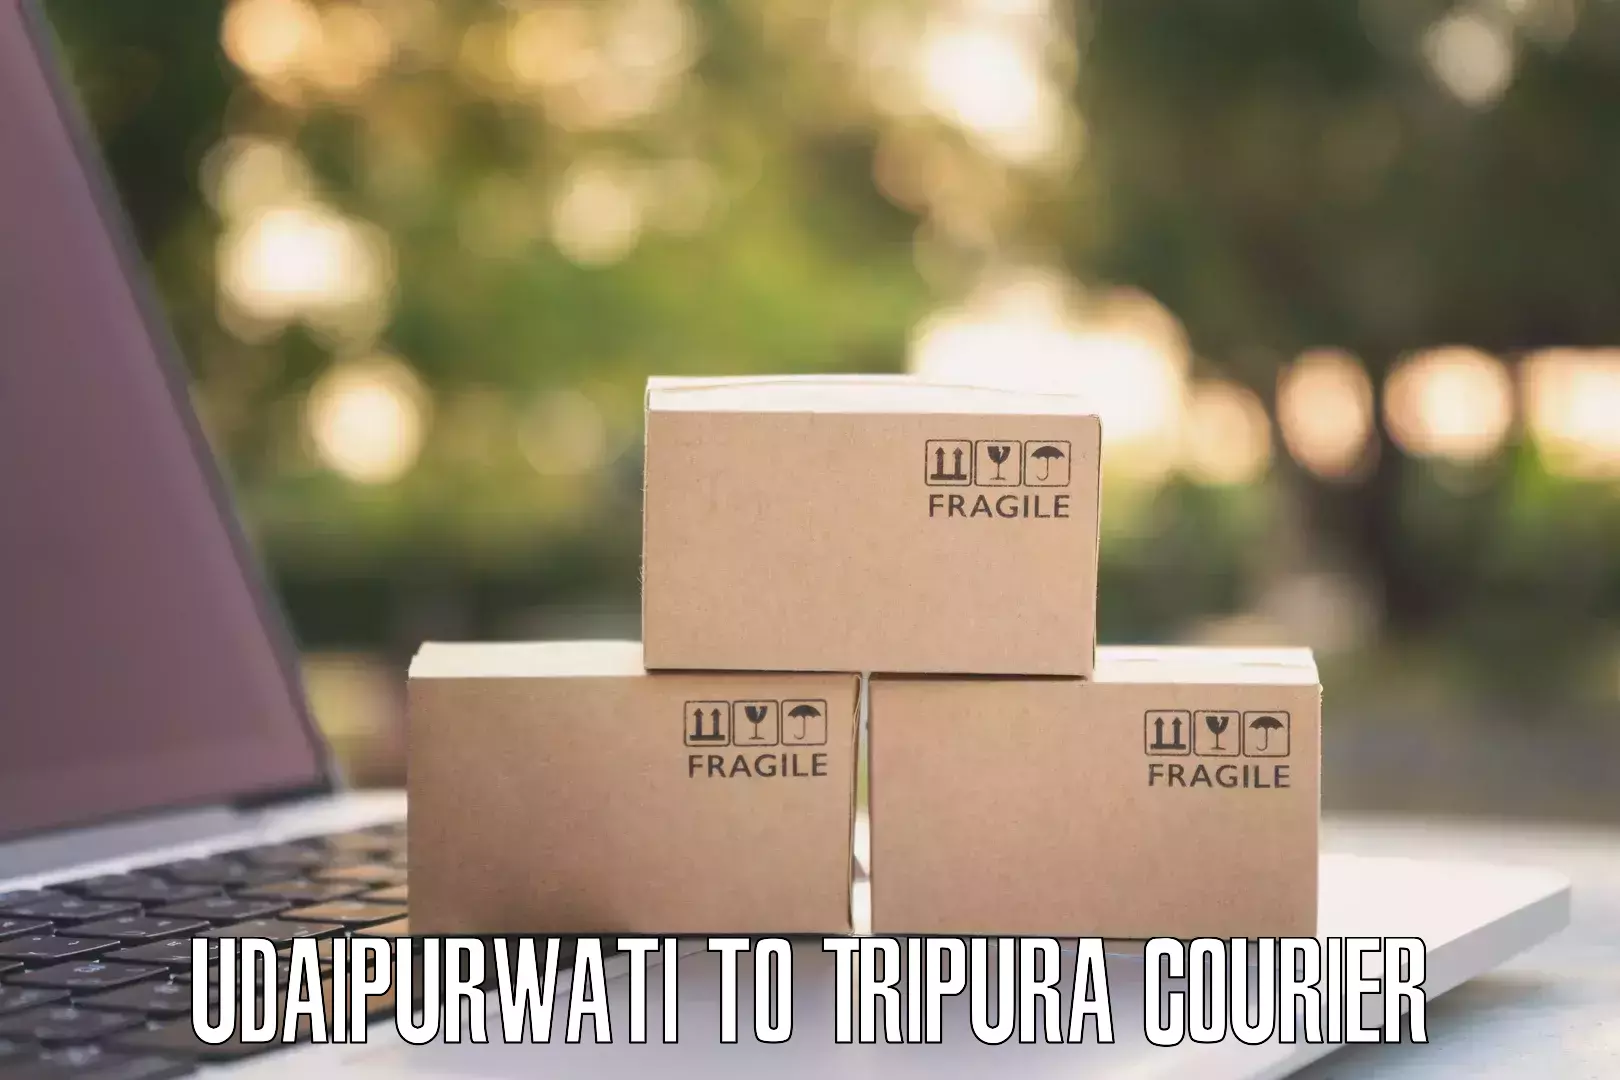 Custom courier packages Udaipurwati to Santirbazar